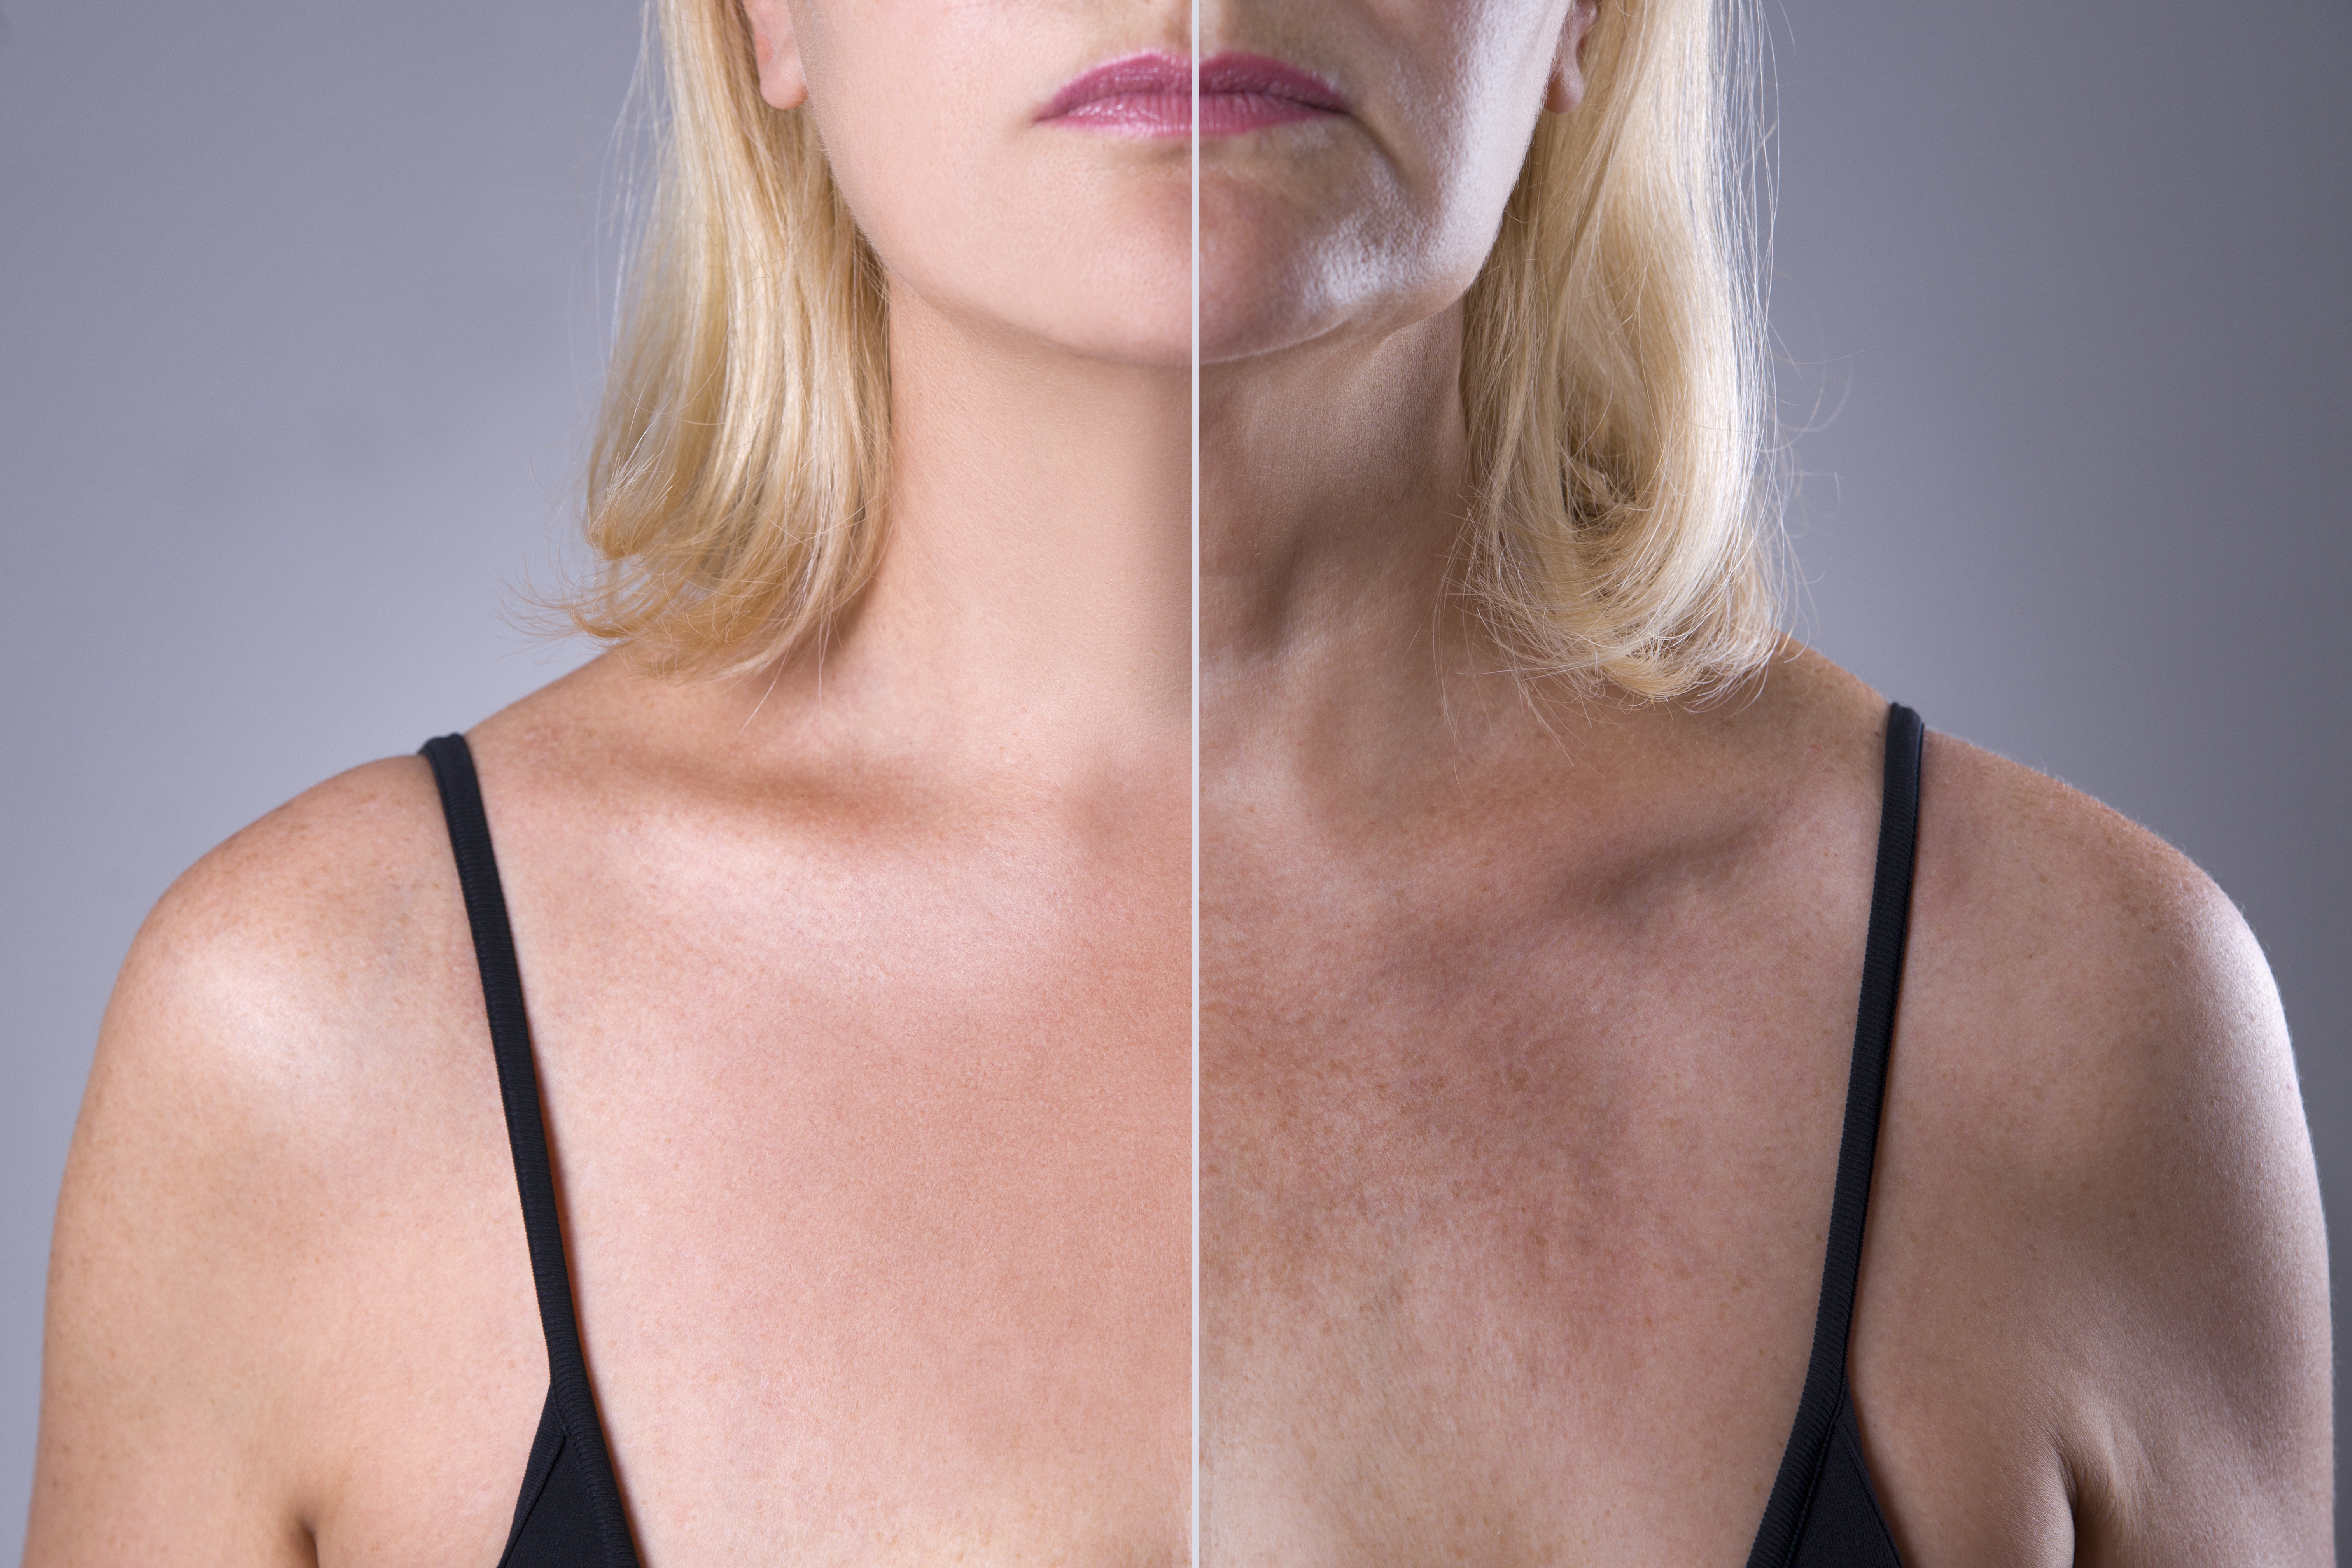 Arrugas y cicatrices: cómo usar vaselina y limón para eliminarlas